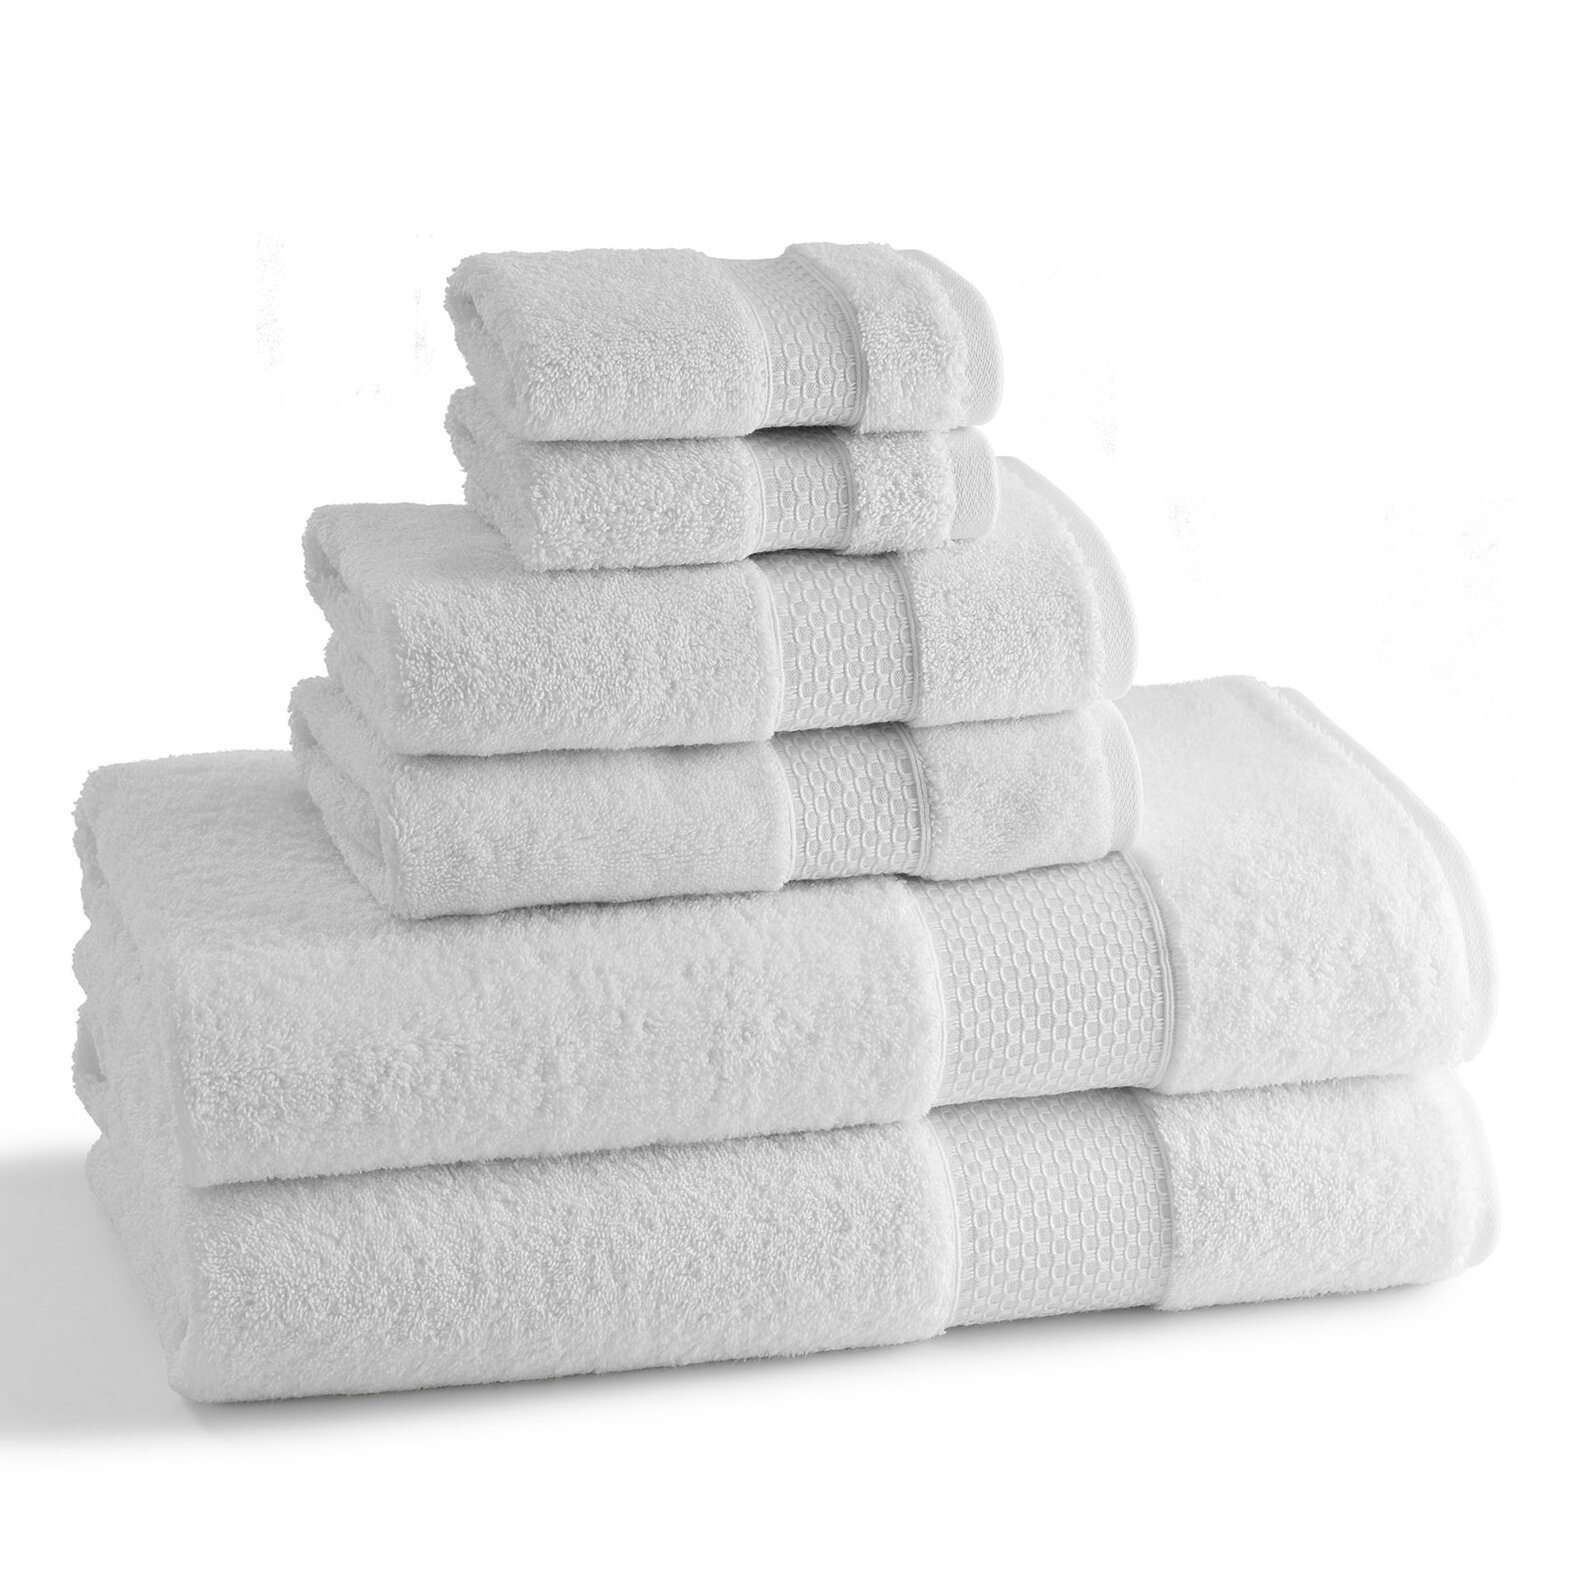 kassatex towels